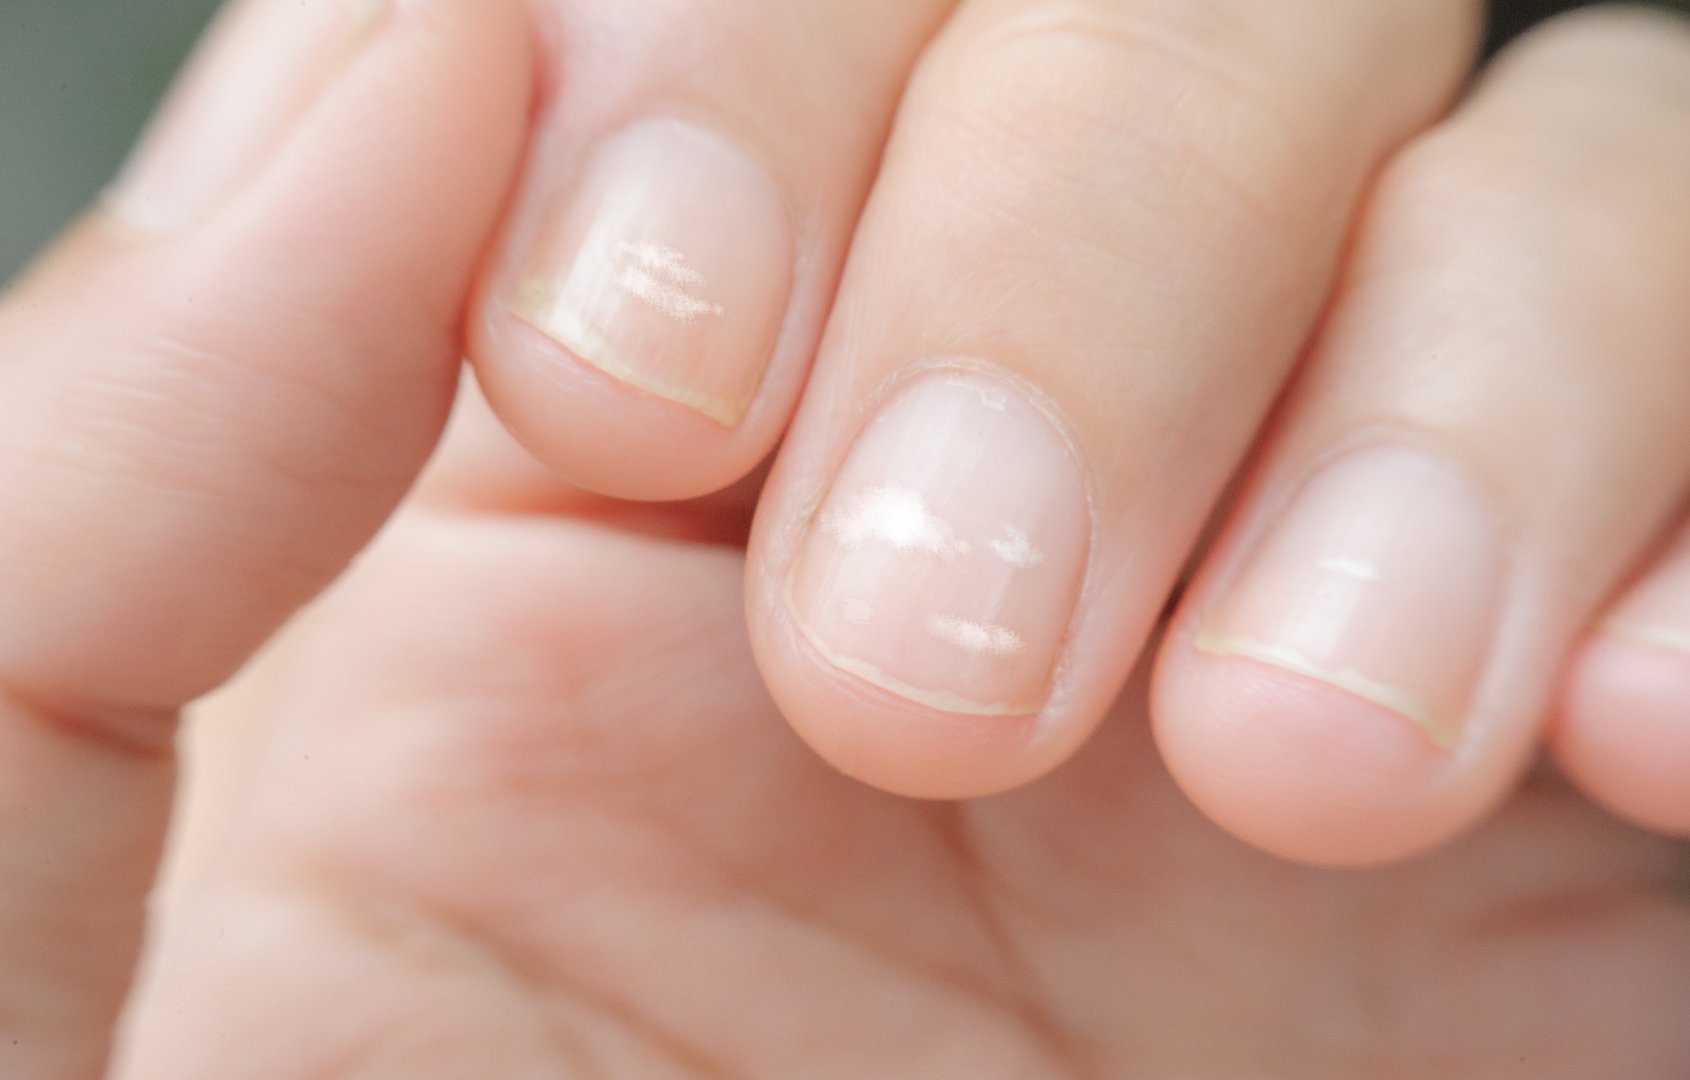 bruzdy na paznokciach jakie sa przyczyny pofalowanej plytki paznokcia wylecz to nail art butterfly dzial zdobienia paznokci